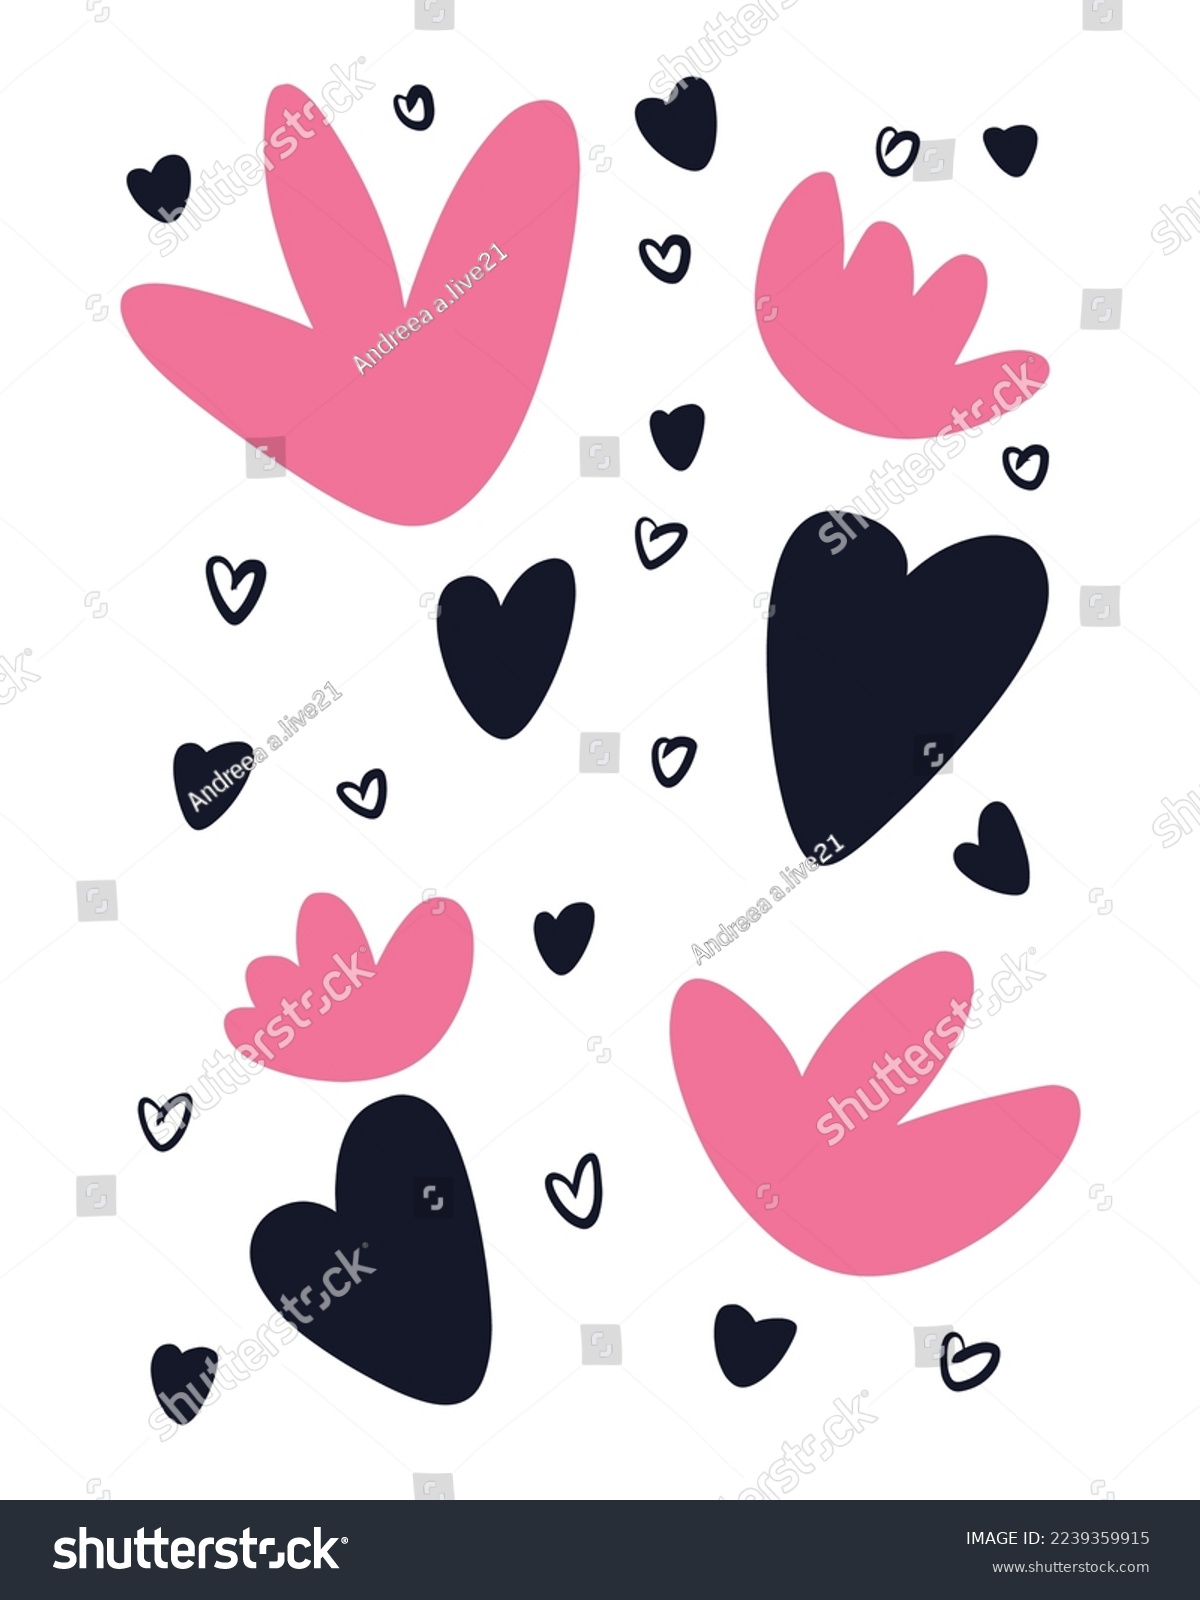 SVG of Valentine's Day Vector SVG, Doodle Hearts Illustration, Hearts Vectors, Love Illustration, Pink Hearts, Painted Hearts Illustration svg